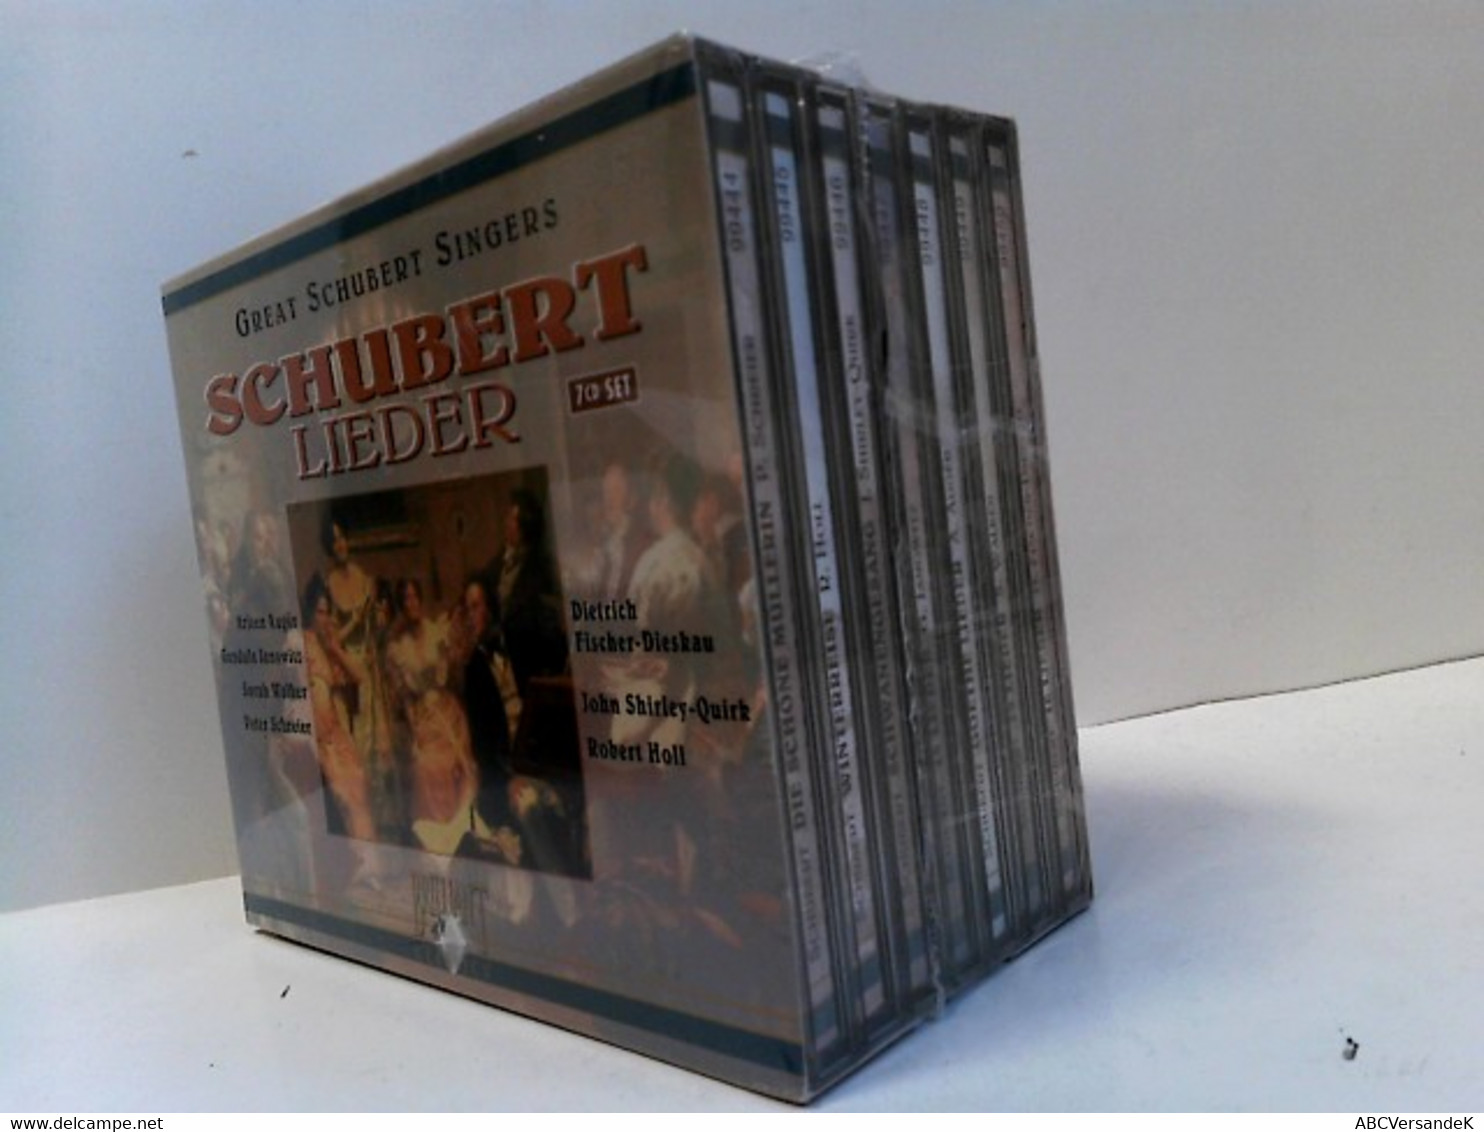 Schubert: Lieder 7 CD Set - CDs